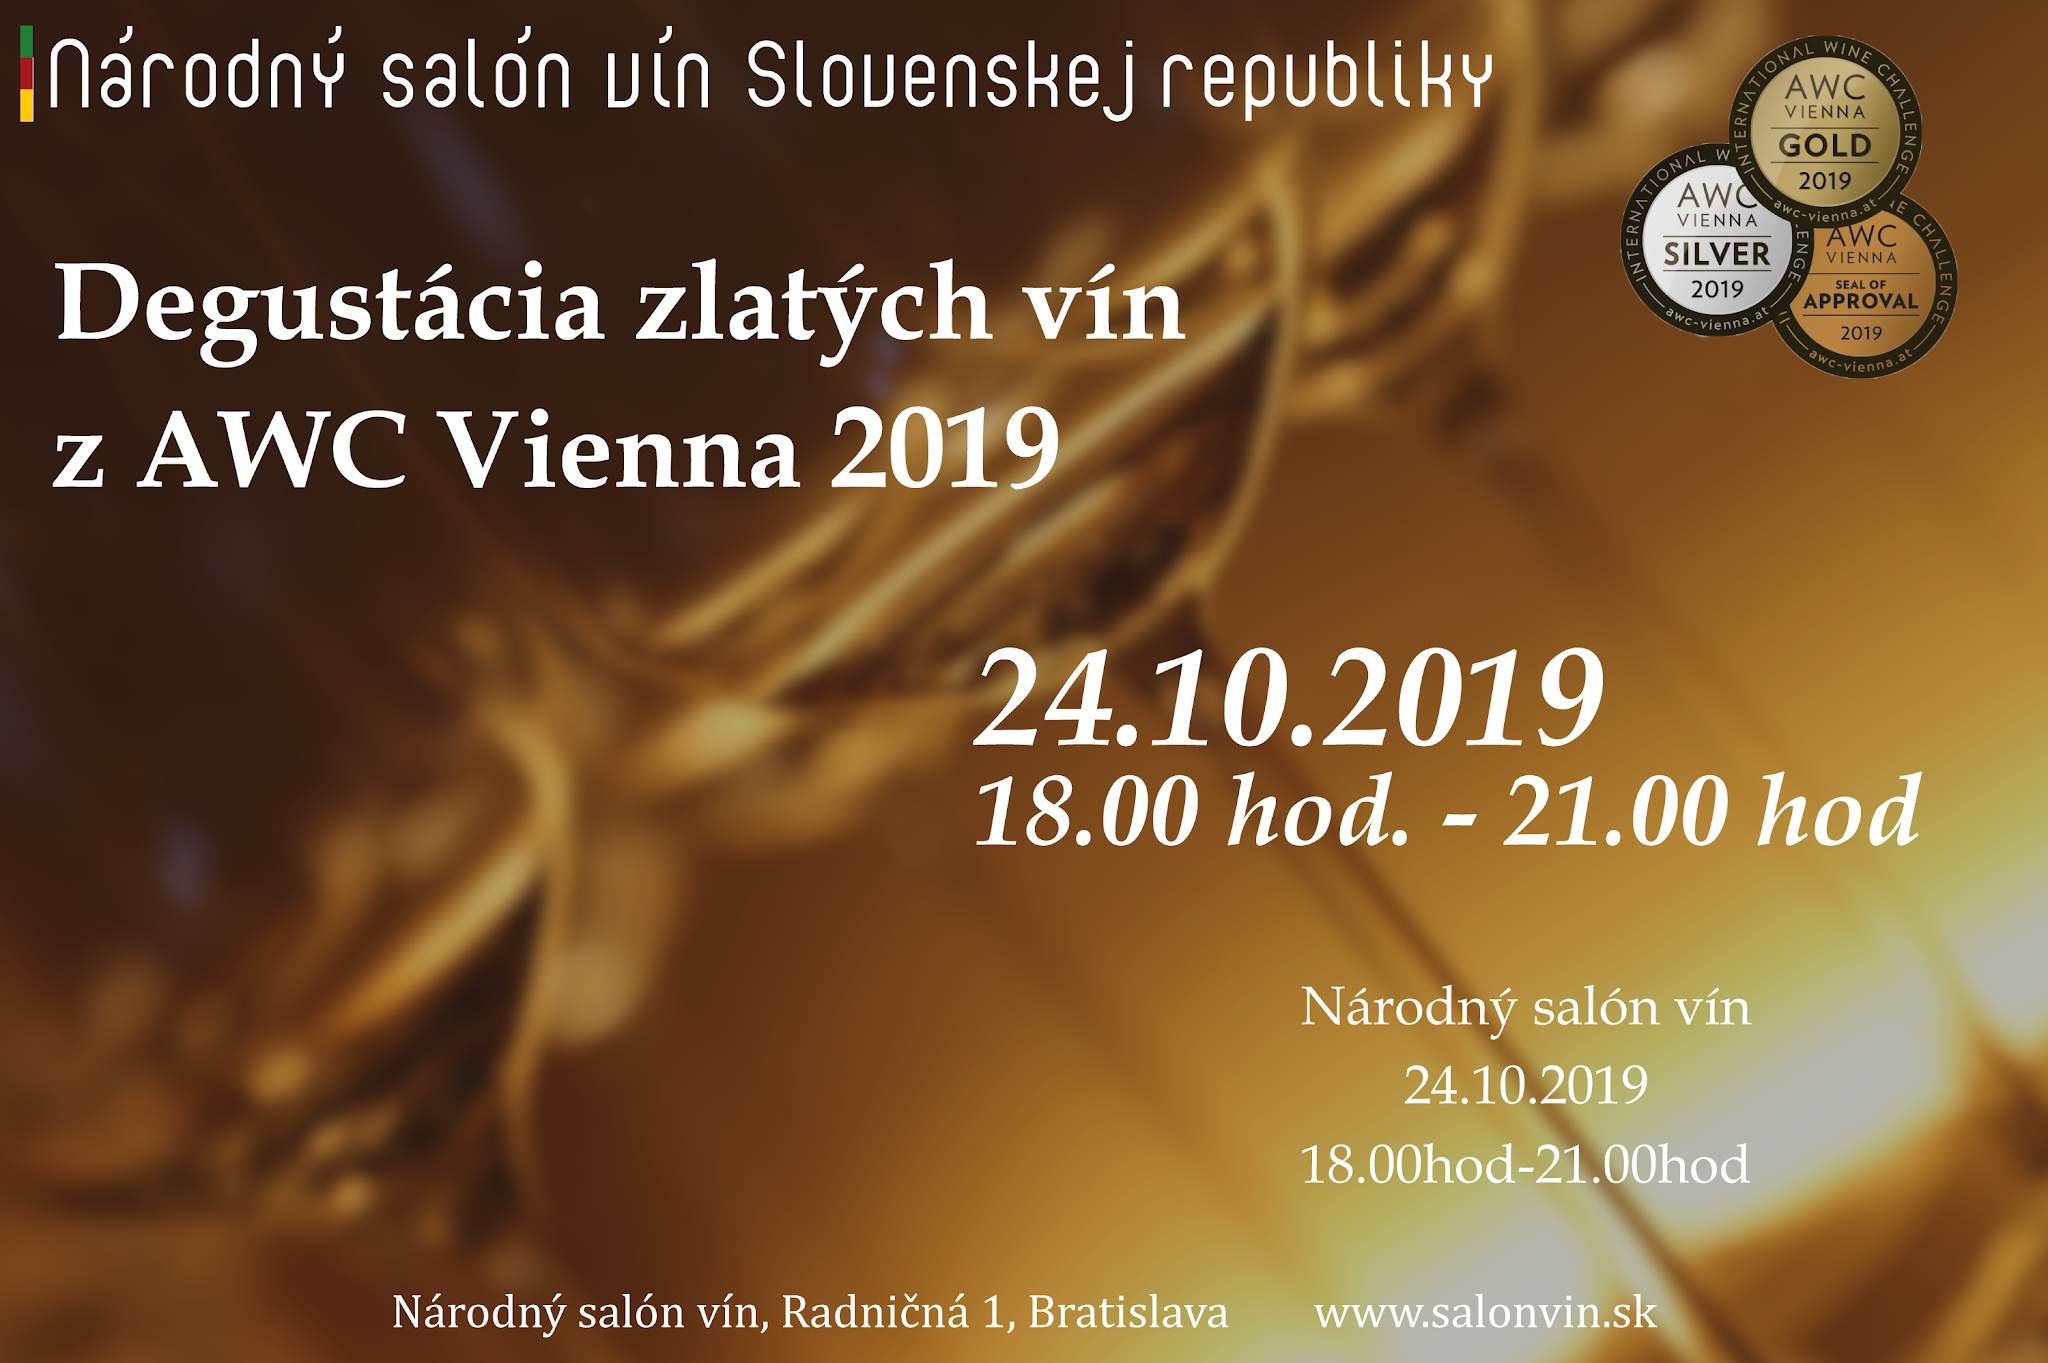 Degustacia zlatých vín z AWC Vienna (24.10.2019)